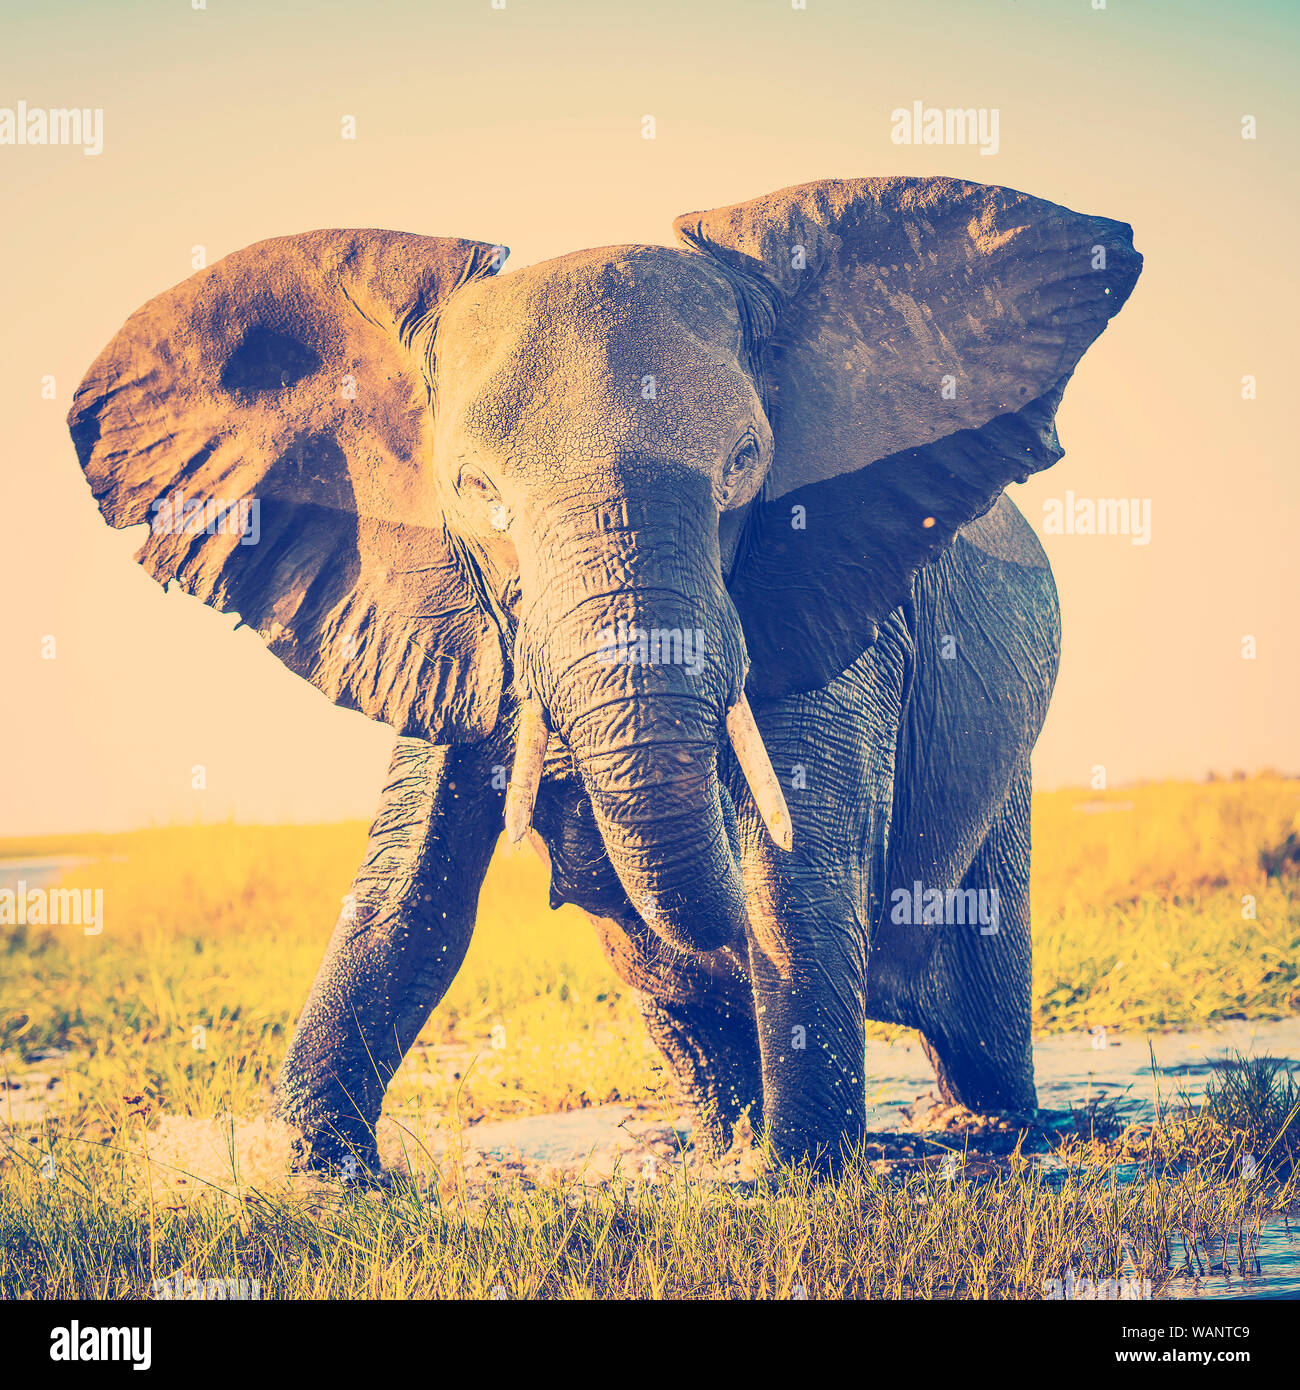 Elefant Hälfte nass im Abendlicht in Afrika immer bereit mit retro Instagram Stil filter Effekt zu berechnen Stockfoto